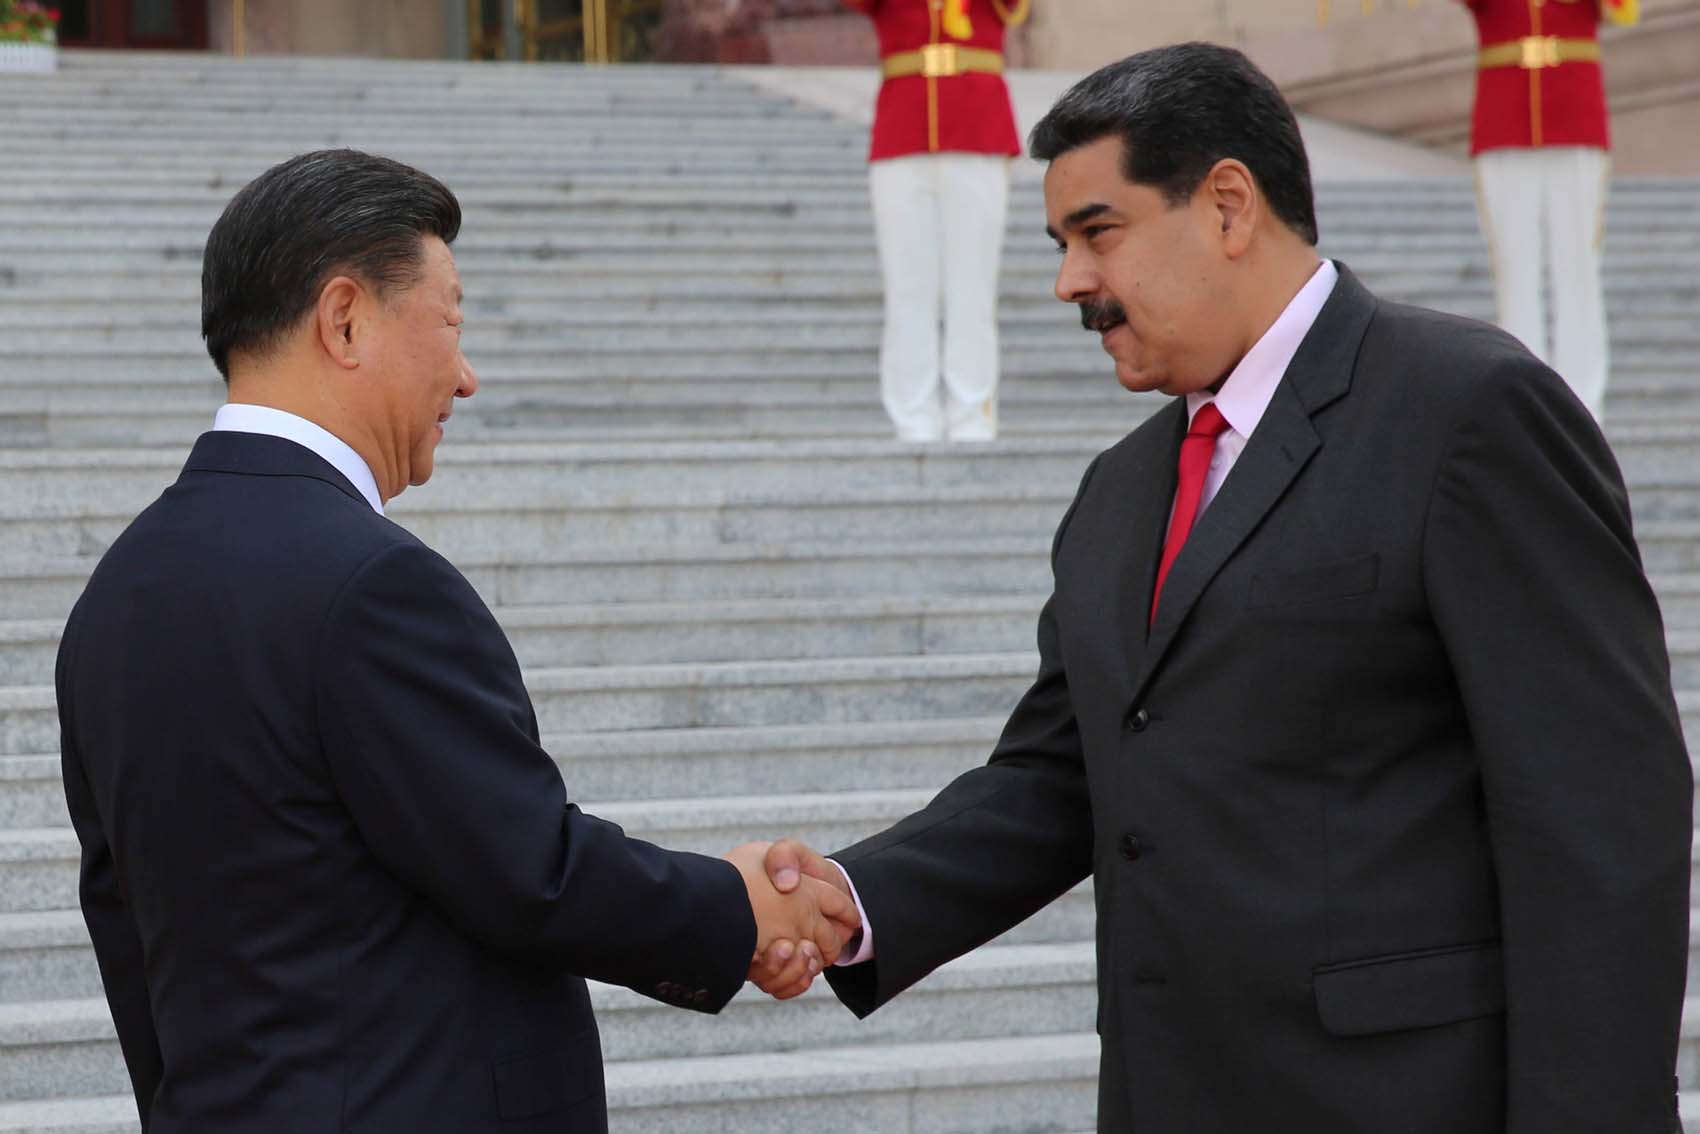 El Bloque Constitucional denuncia la nulidad de la actuación de Maduro con el Gobierno Chino